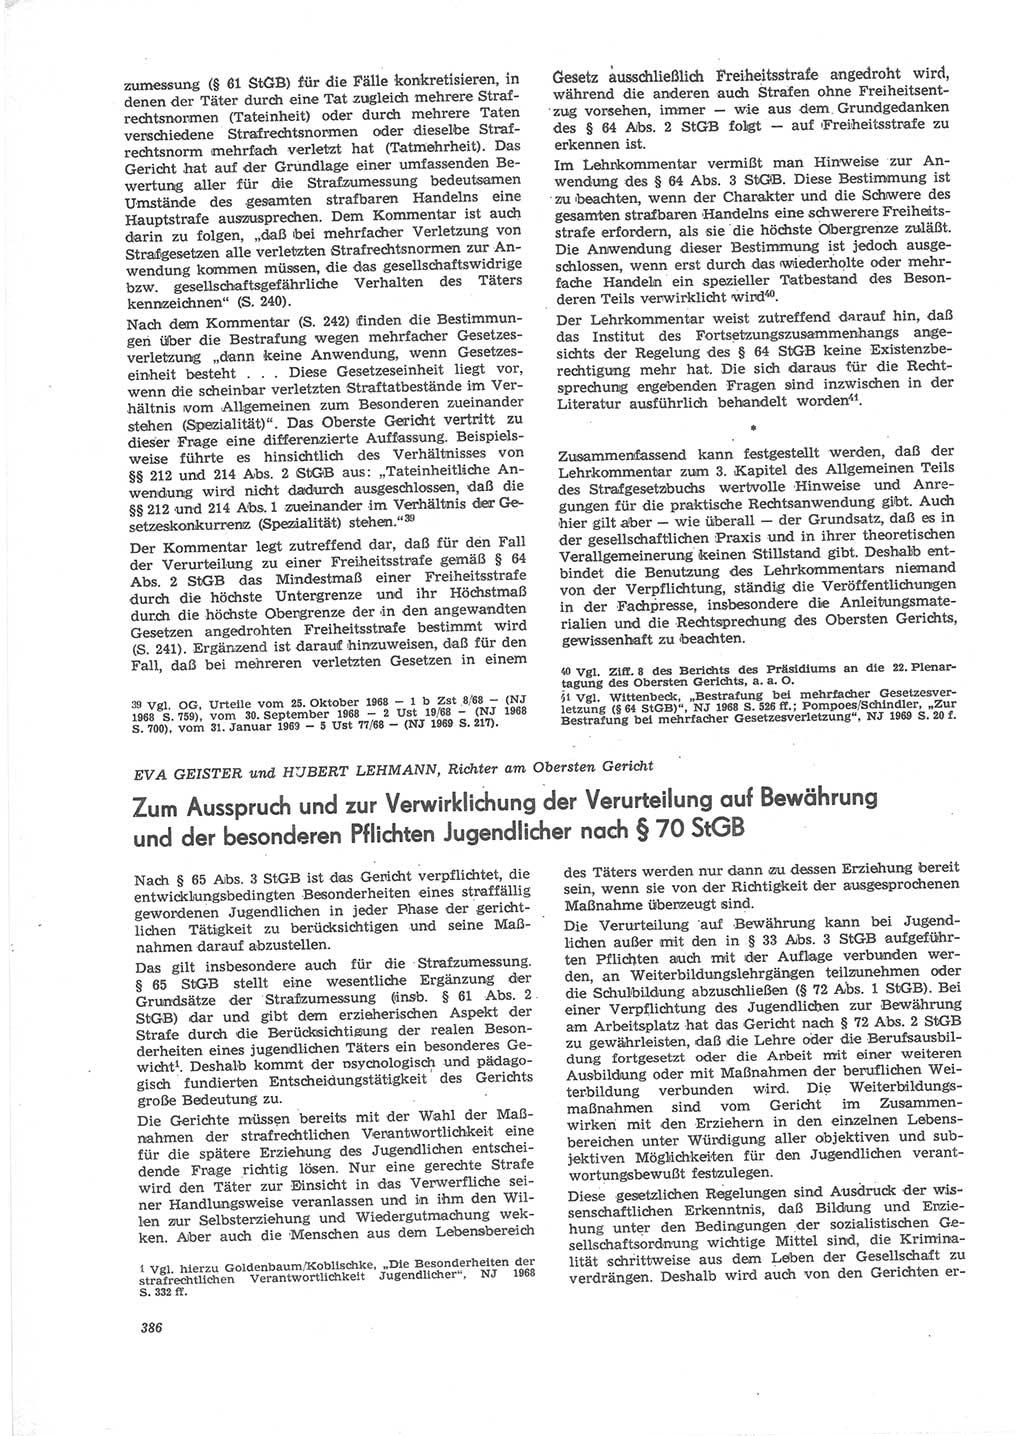 Neue Justiz (NJ), Zeitschrift für Recht und Rechtswissenschaft [Deutsche Demokratische Republik (DDR)], 24. Jahrgang 1970, Seite 386 (NJ DDR 1970, S. 386)